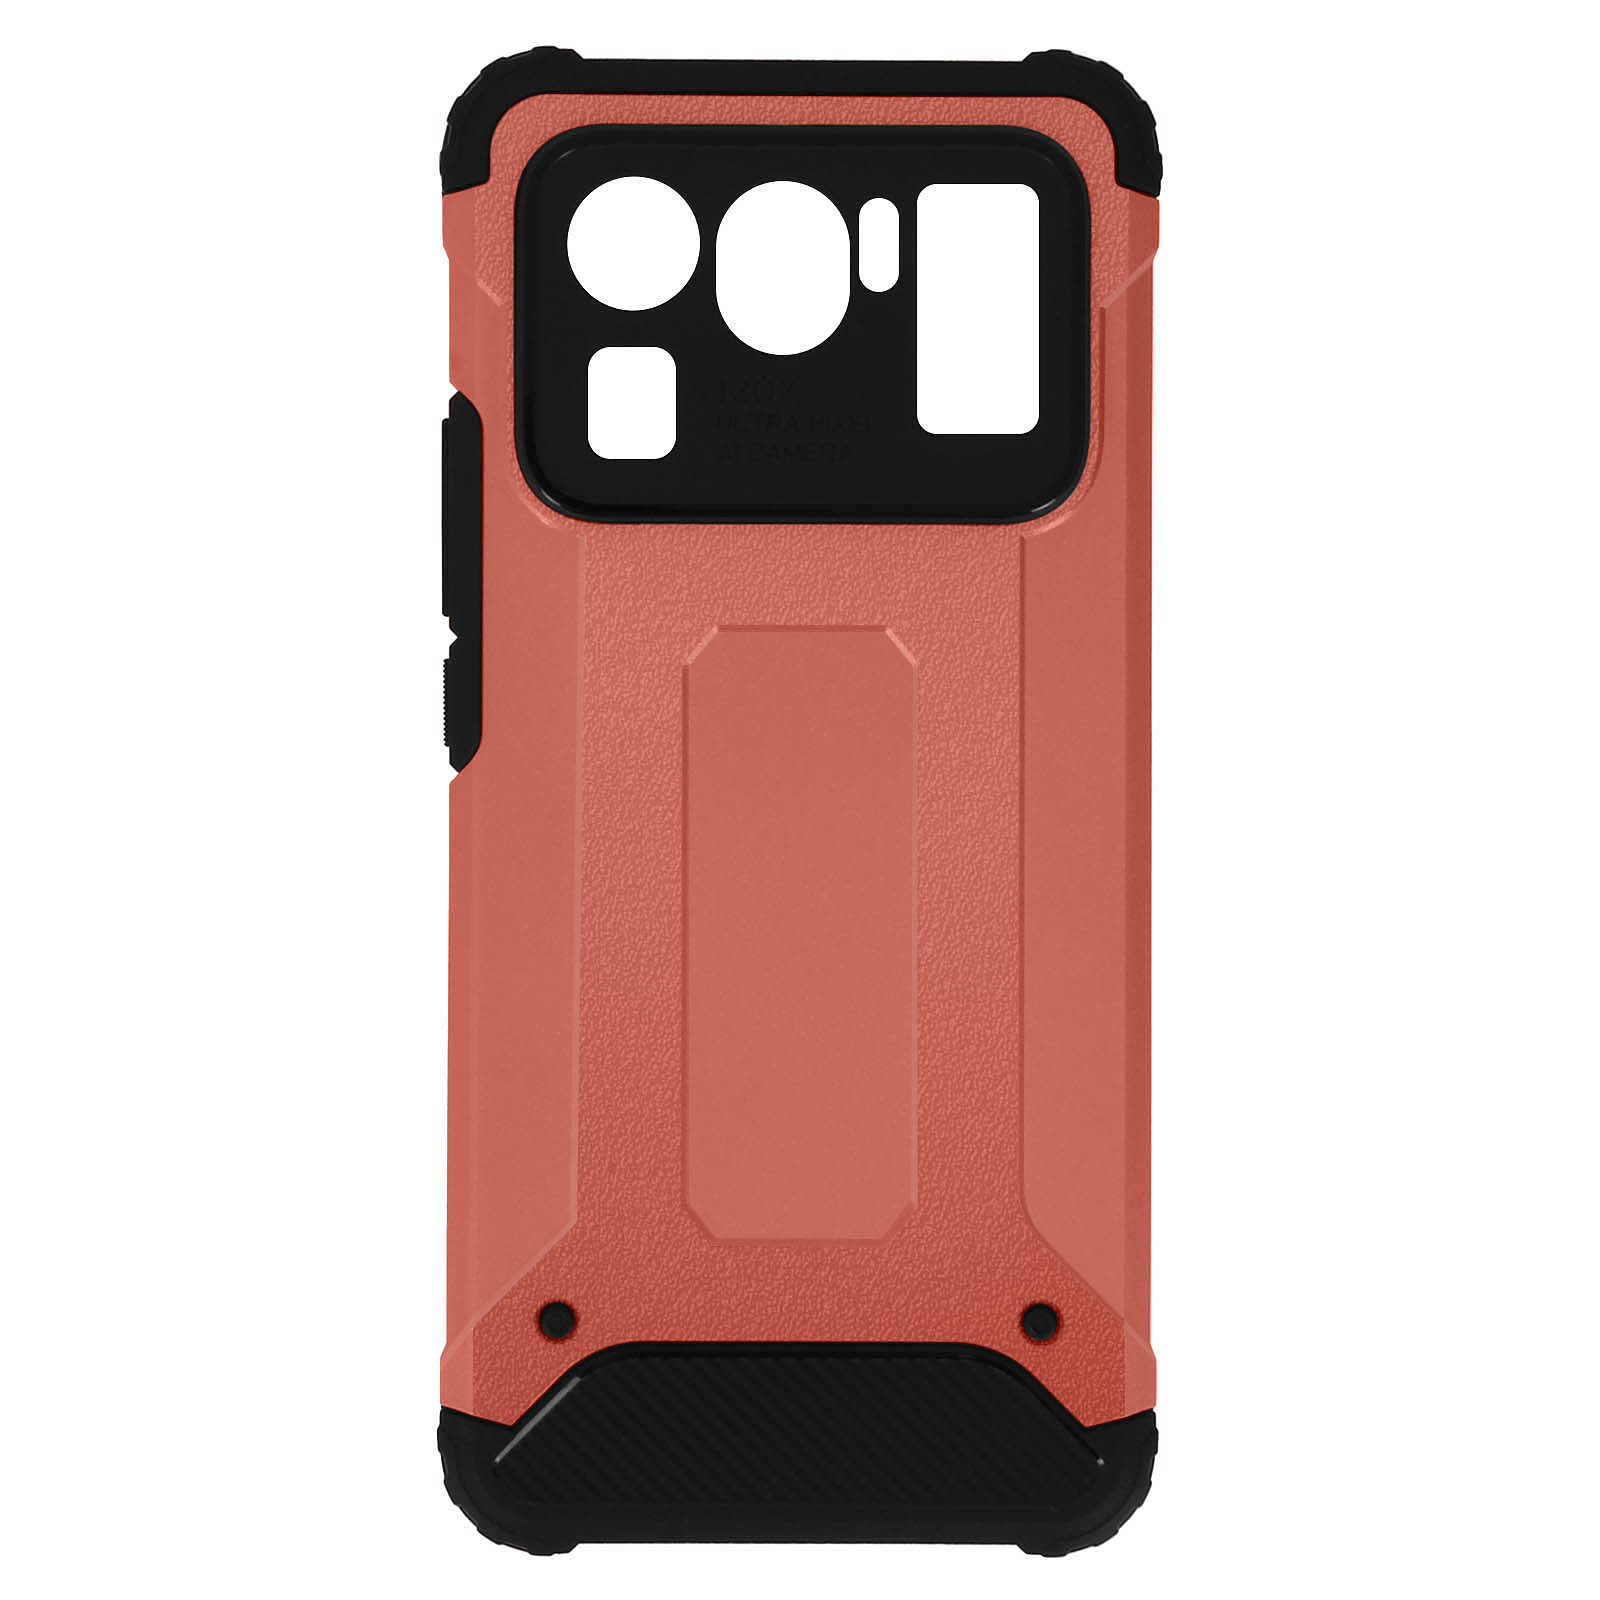 Avizar Coque pour Xiaomi Mi 11 Ultra Design Relief Bi-matière Anti-chute Defender II Rose champagne - Coque telephone Avizar